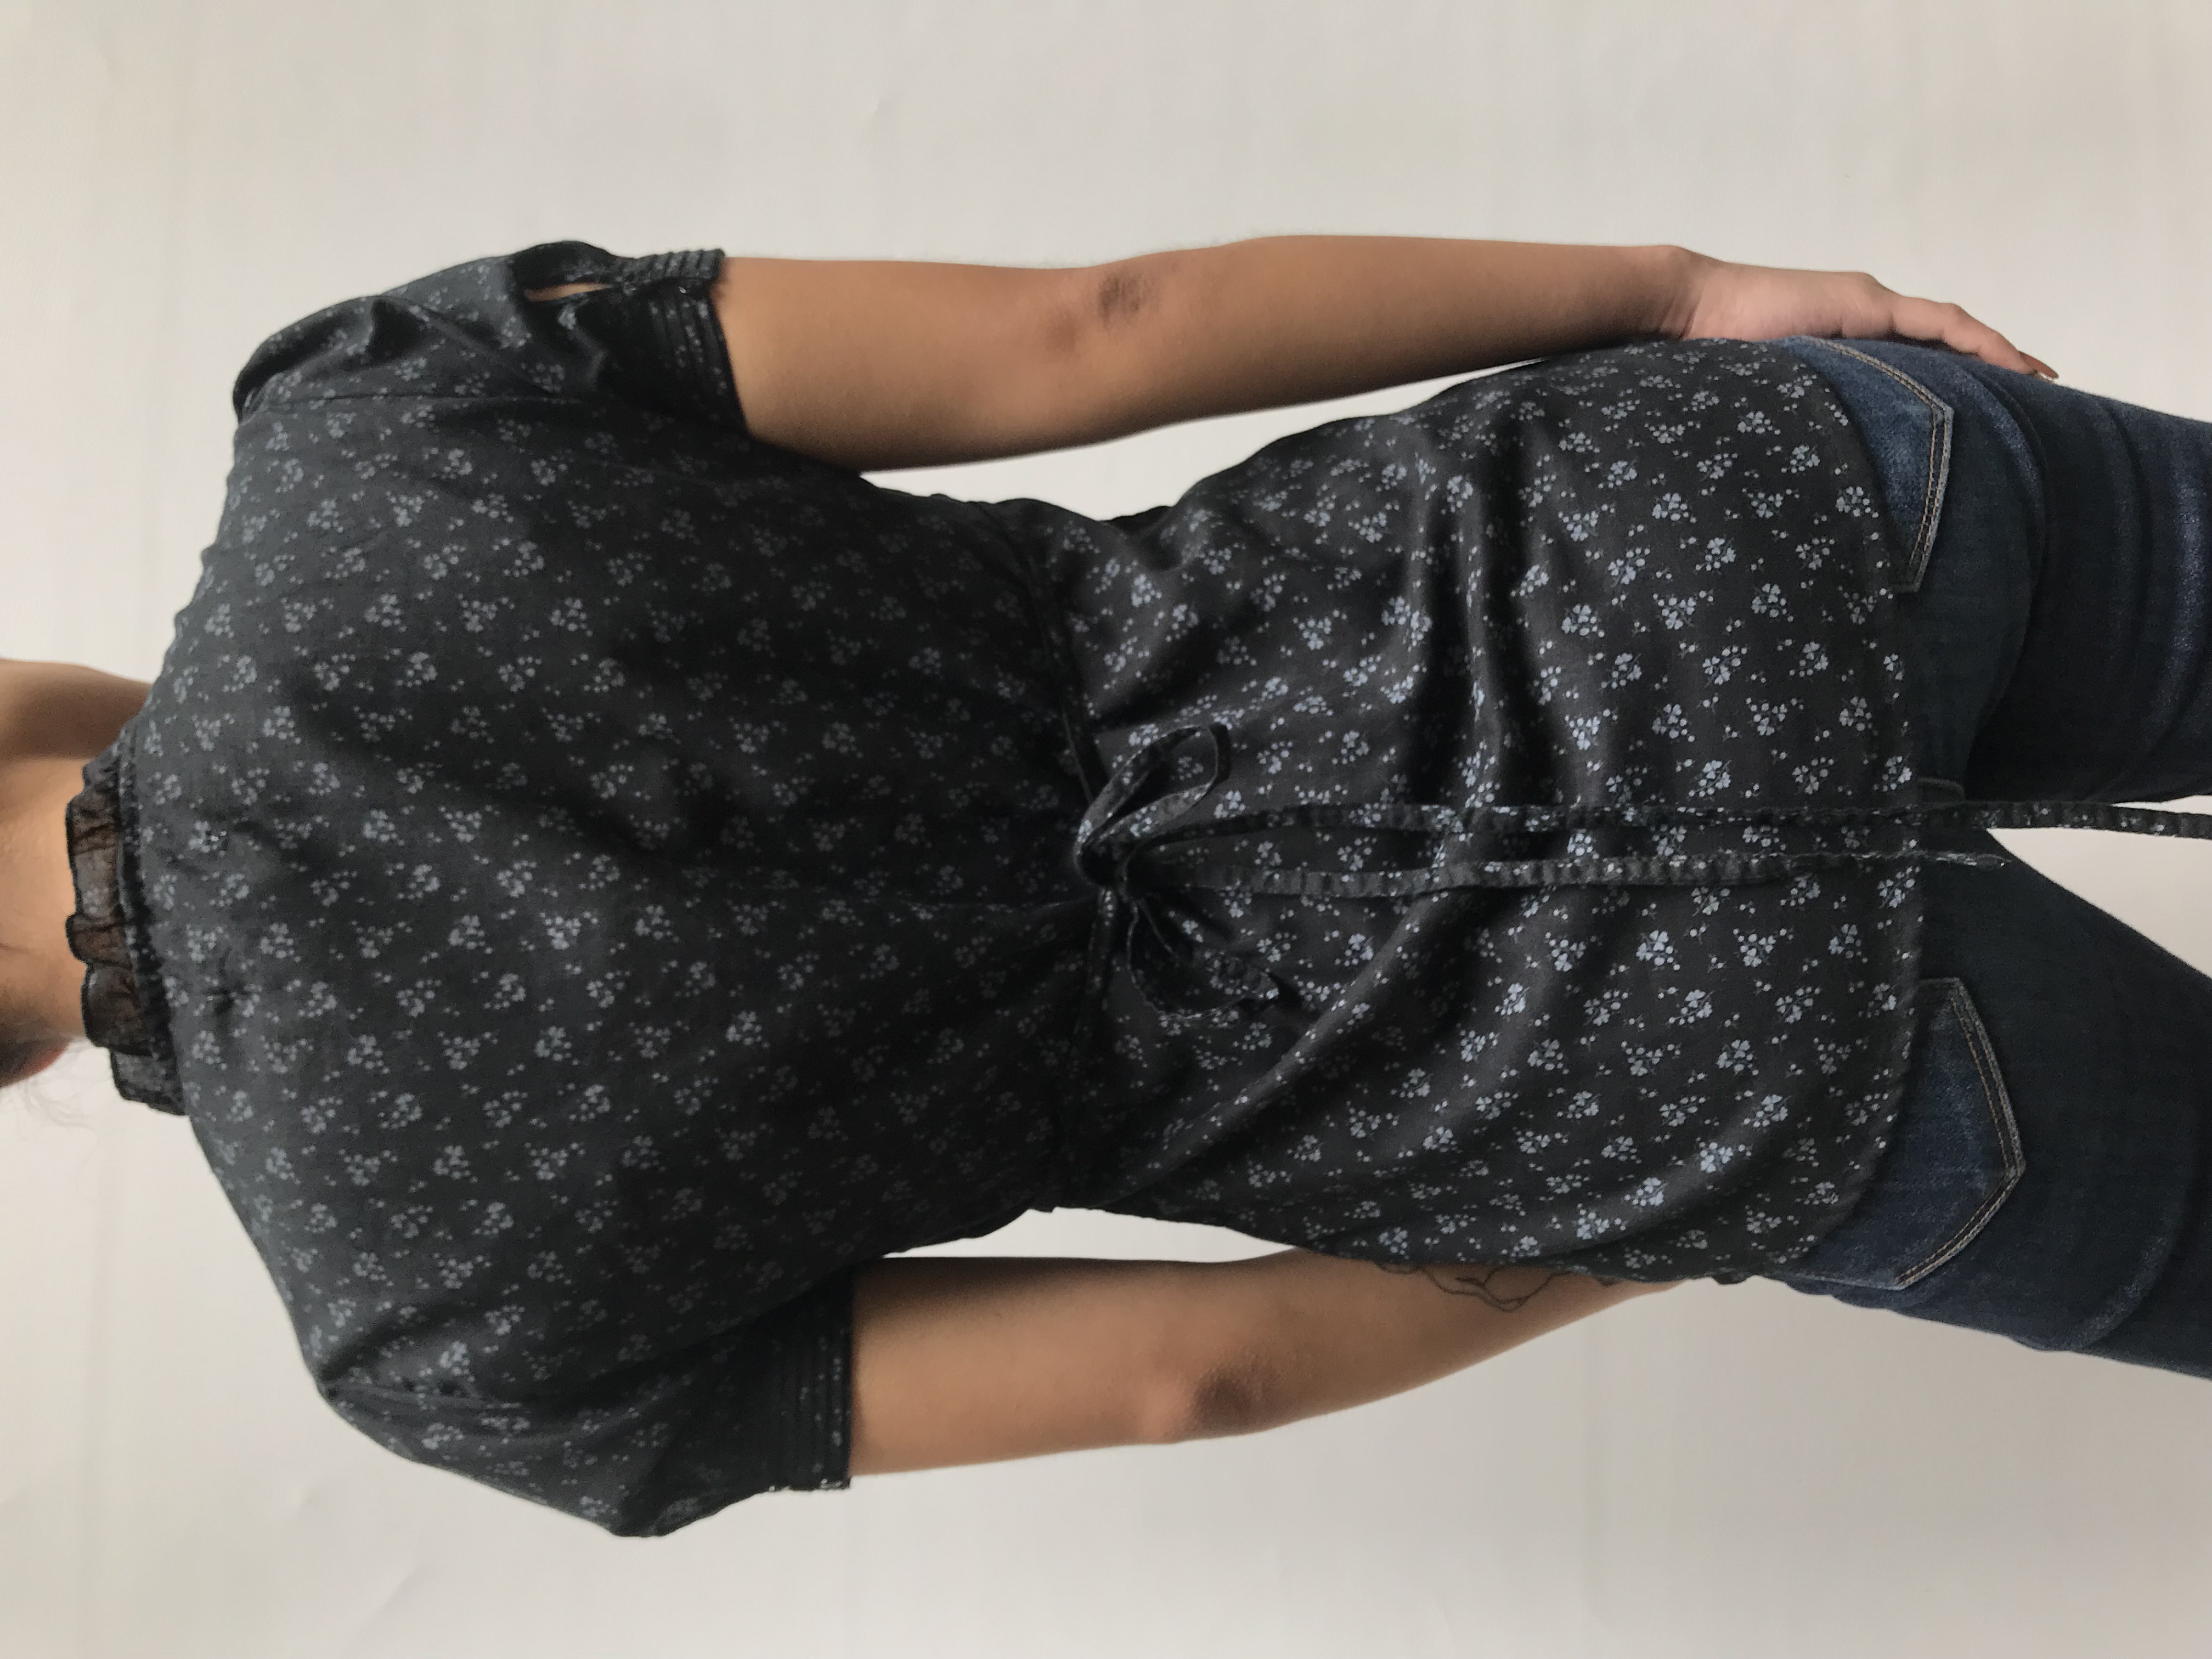 Blusa Aeropostale negra con estampado de flores grises, escote en V con pliegues, botones y bobos en el pecho, tira para regular la cintura
Talla S